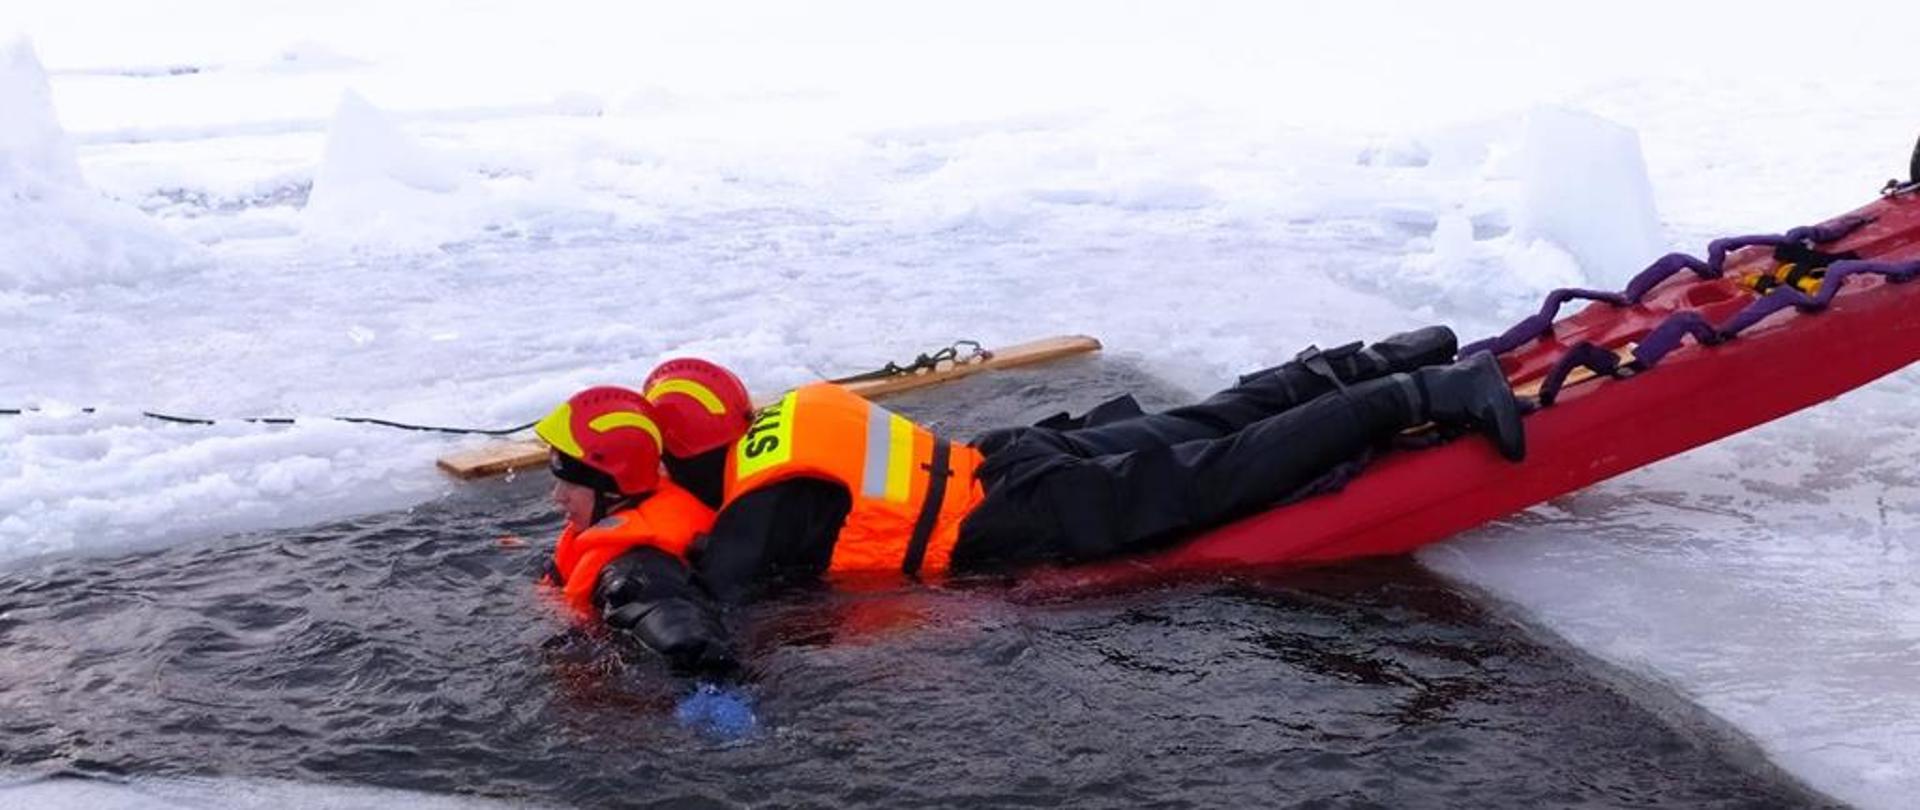 Strażak zabezpieczony na saniach lodowych podejmuje z wody osobę pod którą załamał się lód